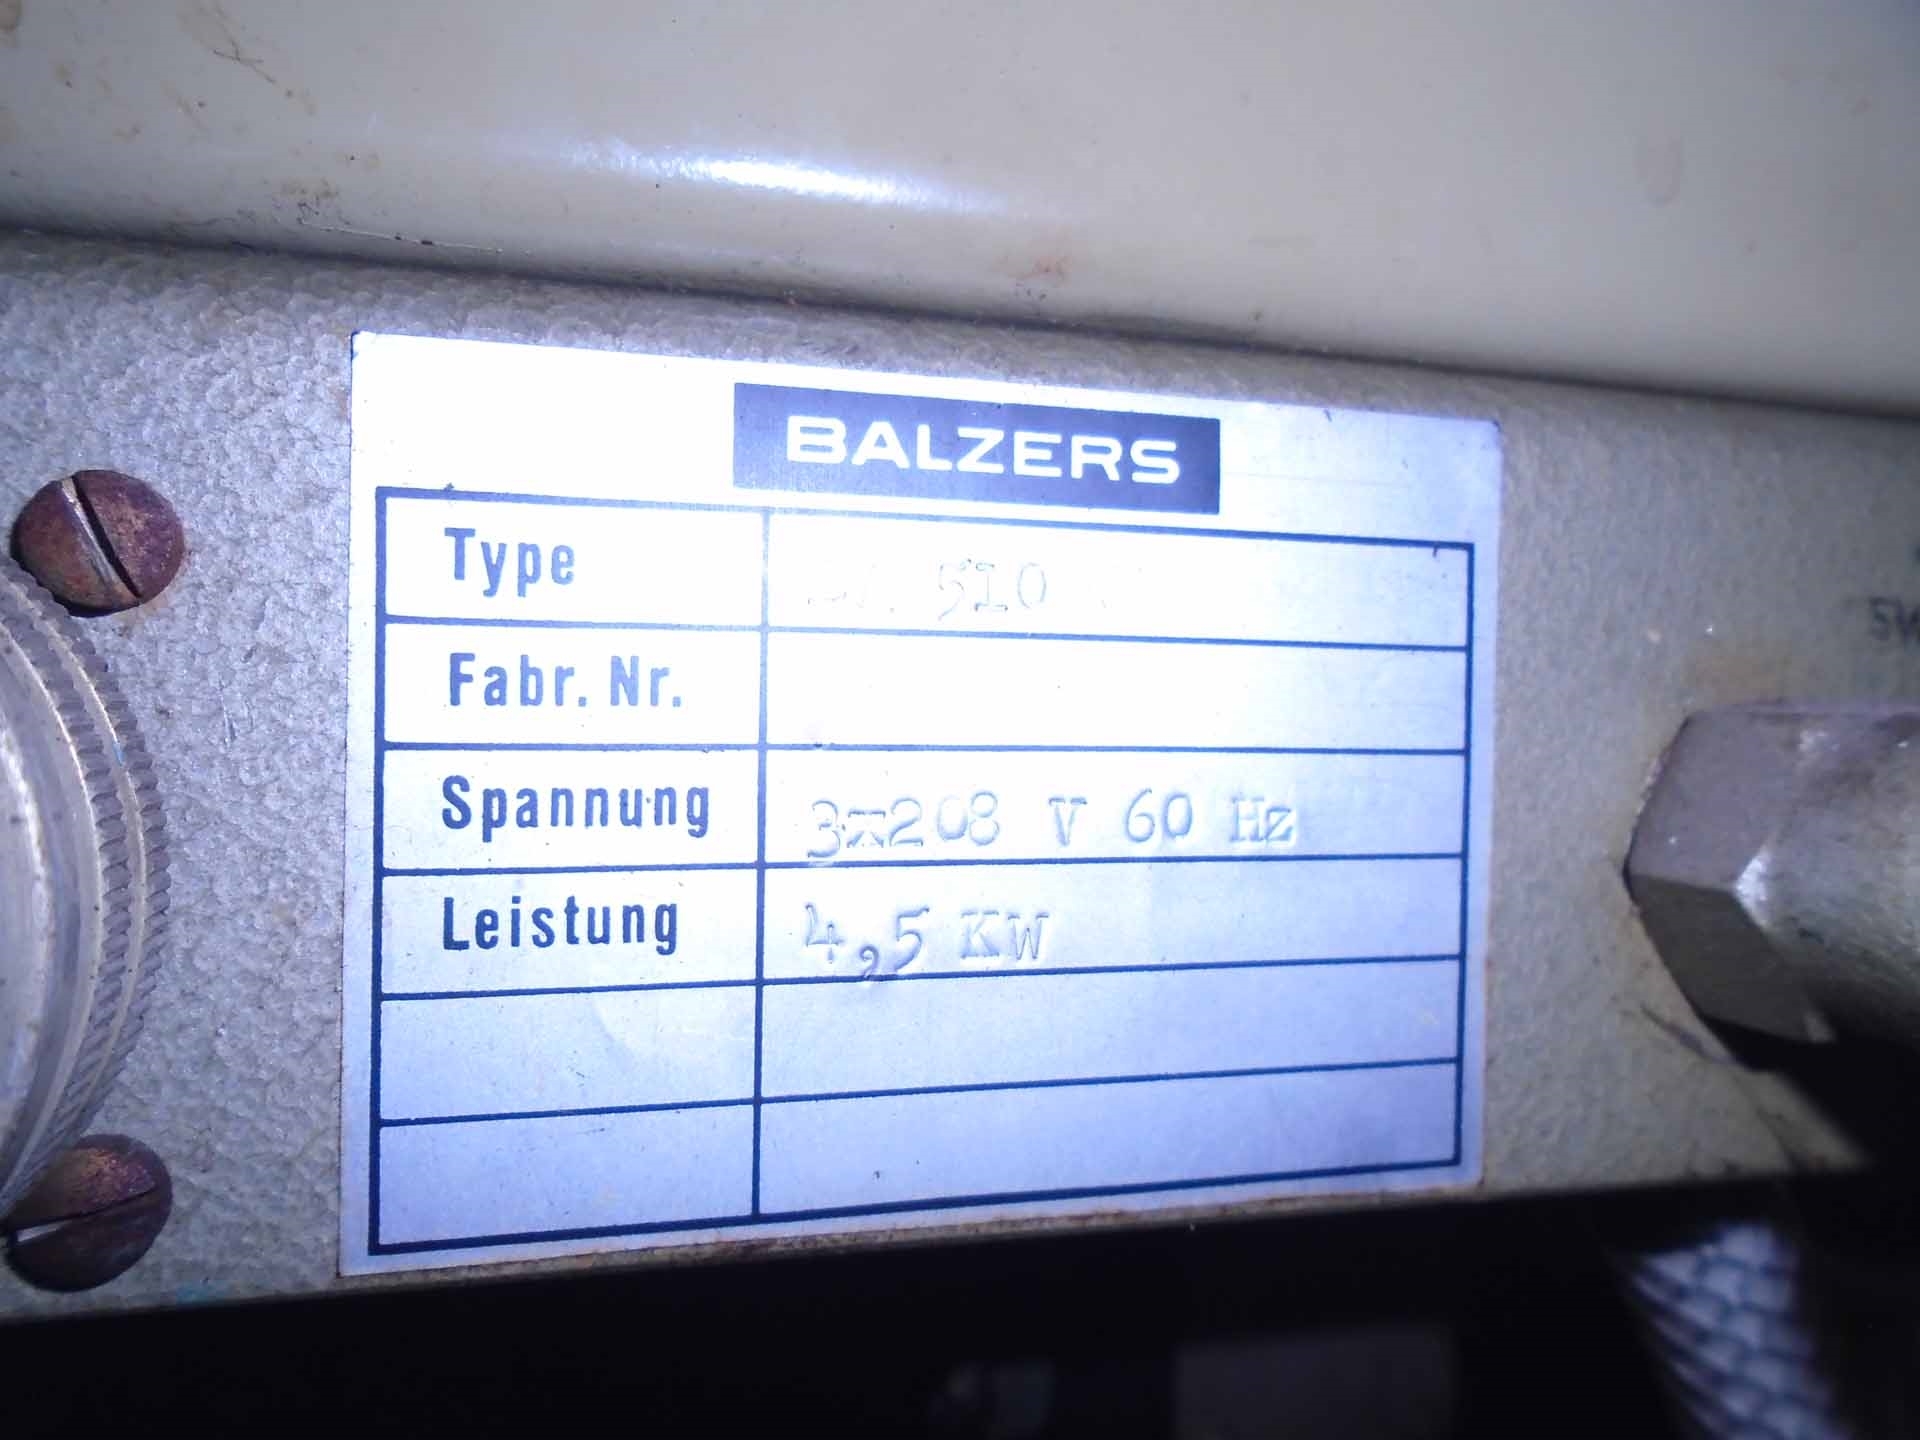 圖為 已使用的 BALZERS BA 510 待售